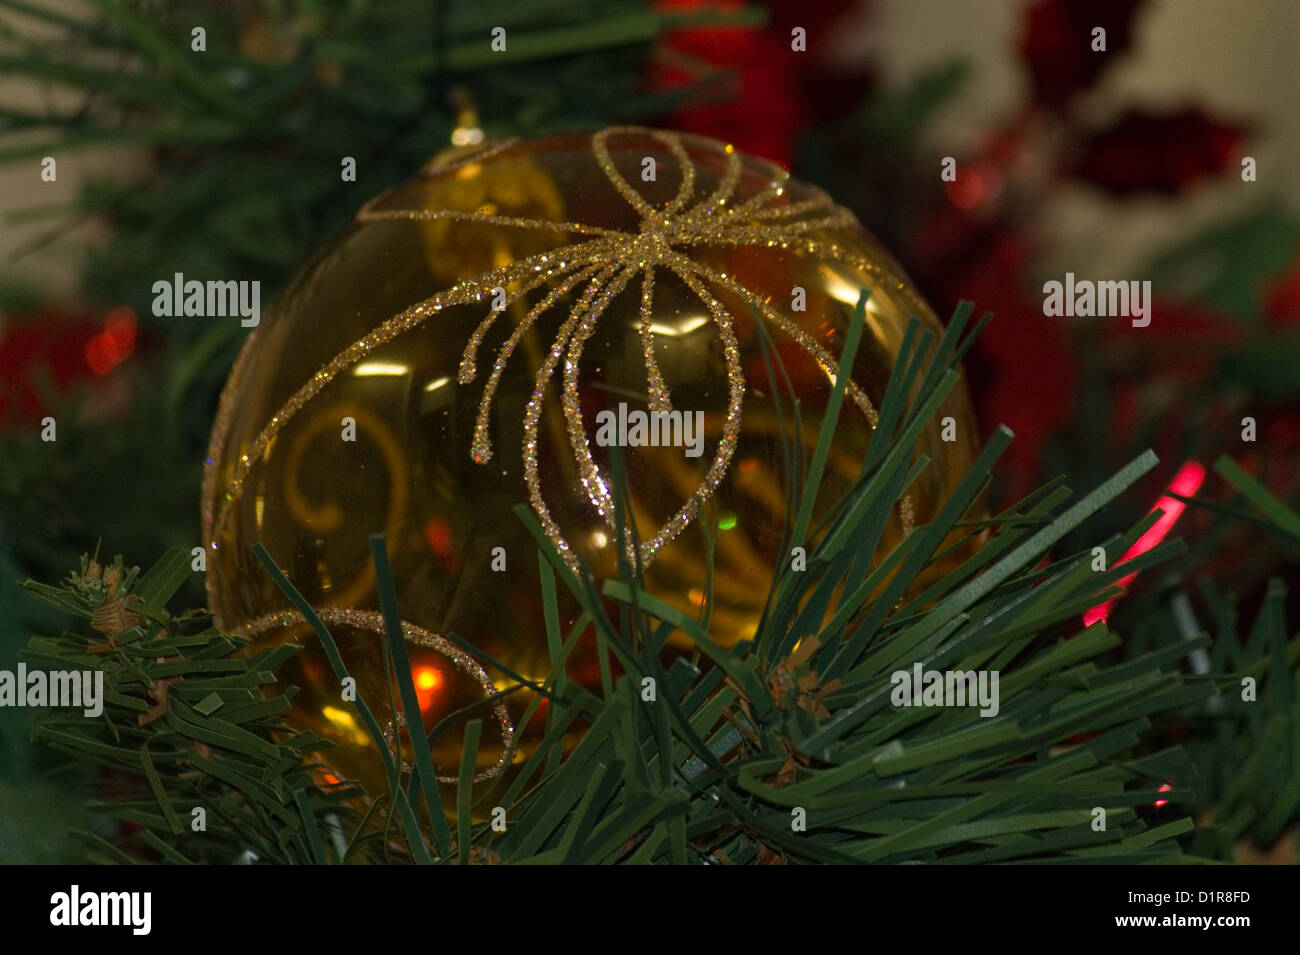 Decorazioni Natalizie Palline Di Vetro.Glass Ball A Christmas Tree Decoration Pallina Di Vetro Una Stock Photo Alamy